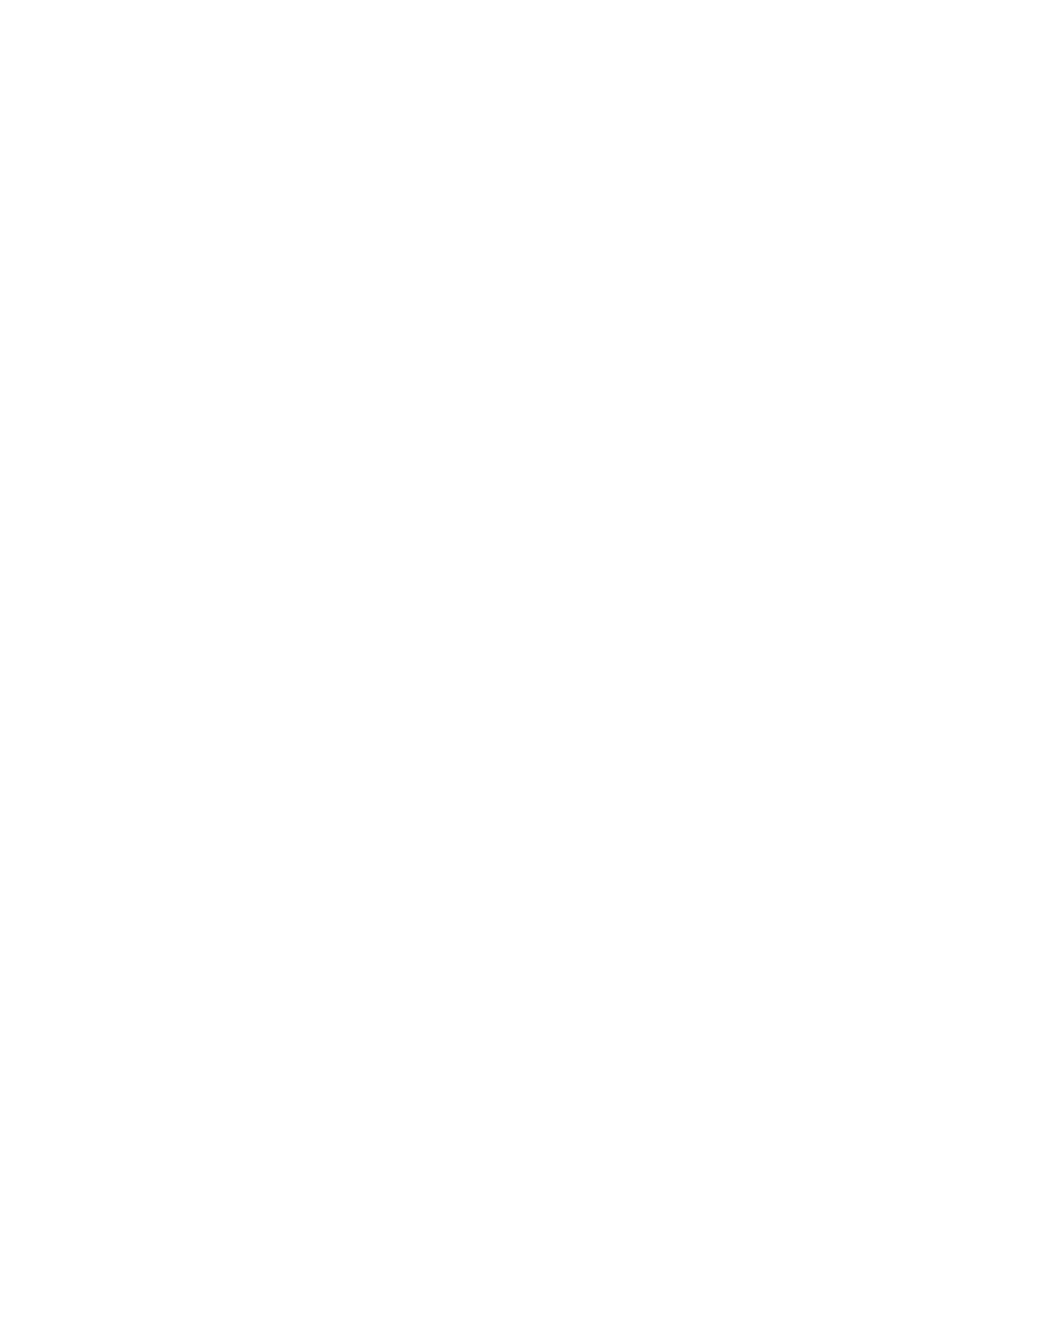 DJJ Mosso Construction